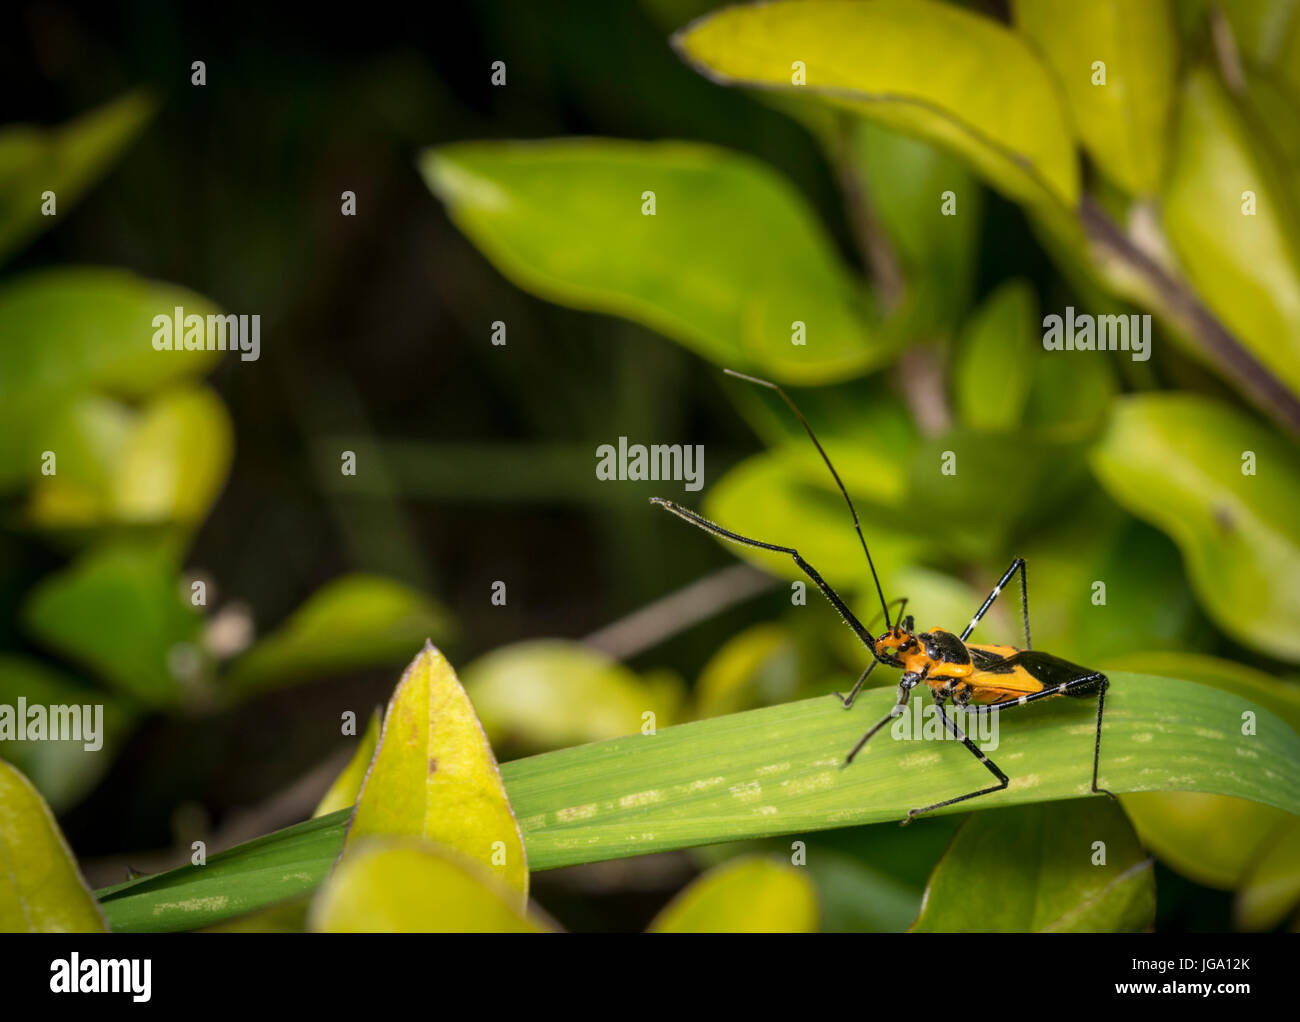 Pyrrhocoridae bug in appoggio su una foglia di pianta Foto Stock